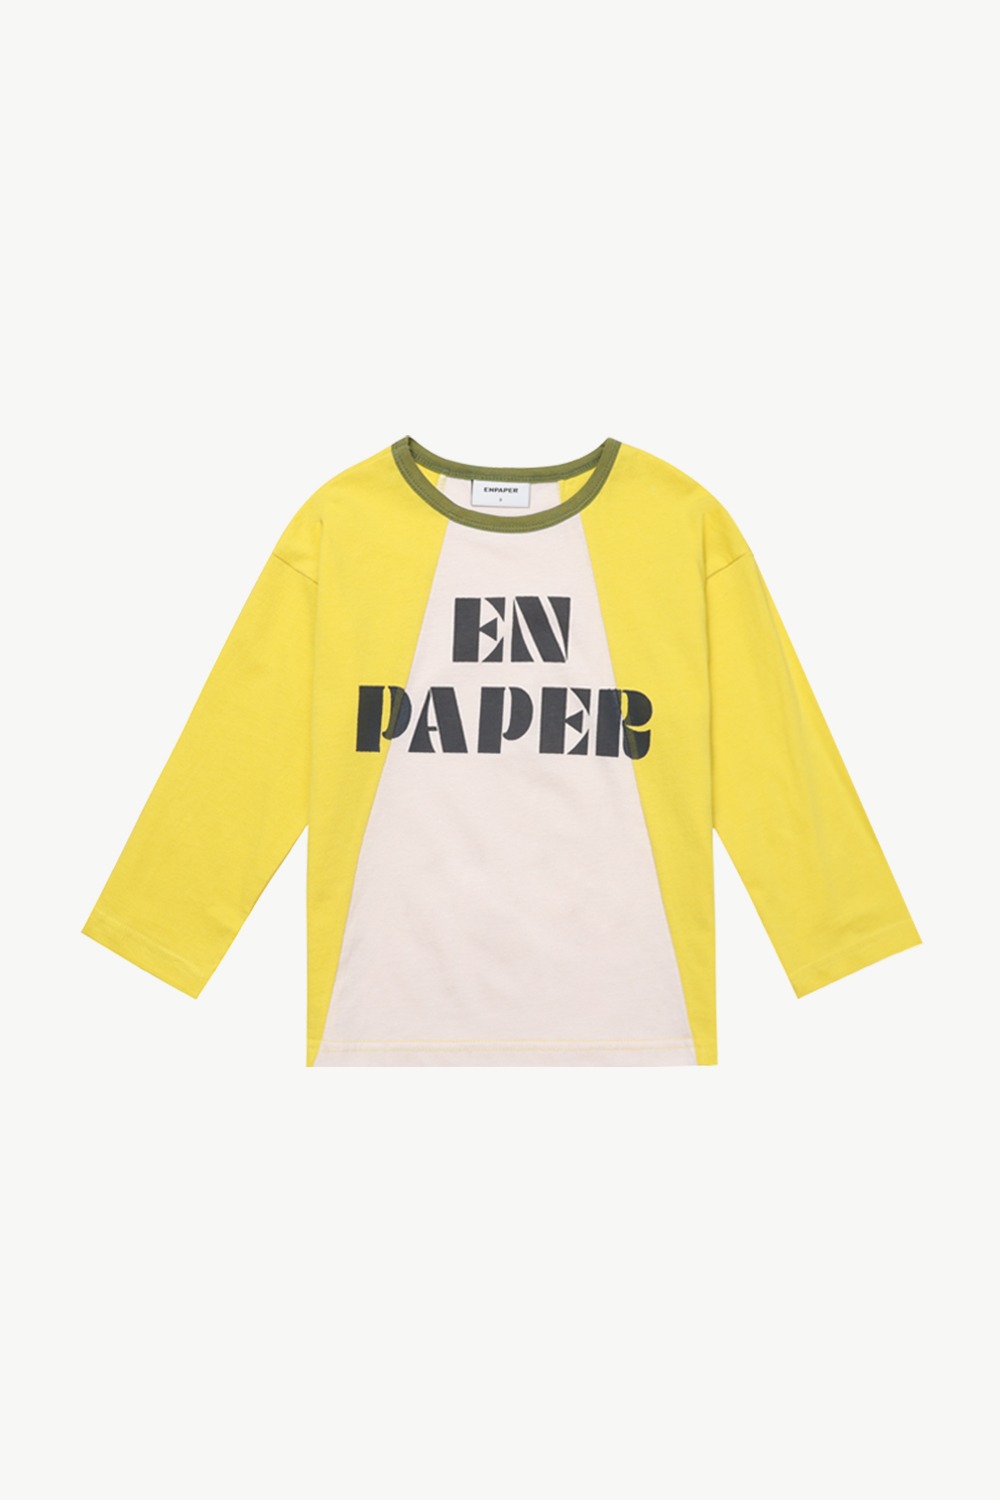 엔페이퍼 콤비 티셔츠 (옐로우)